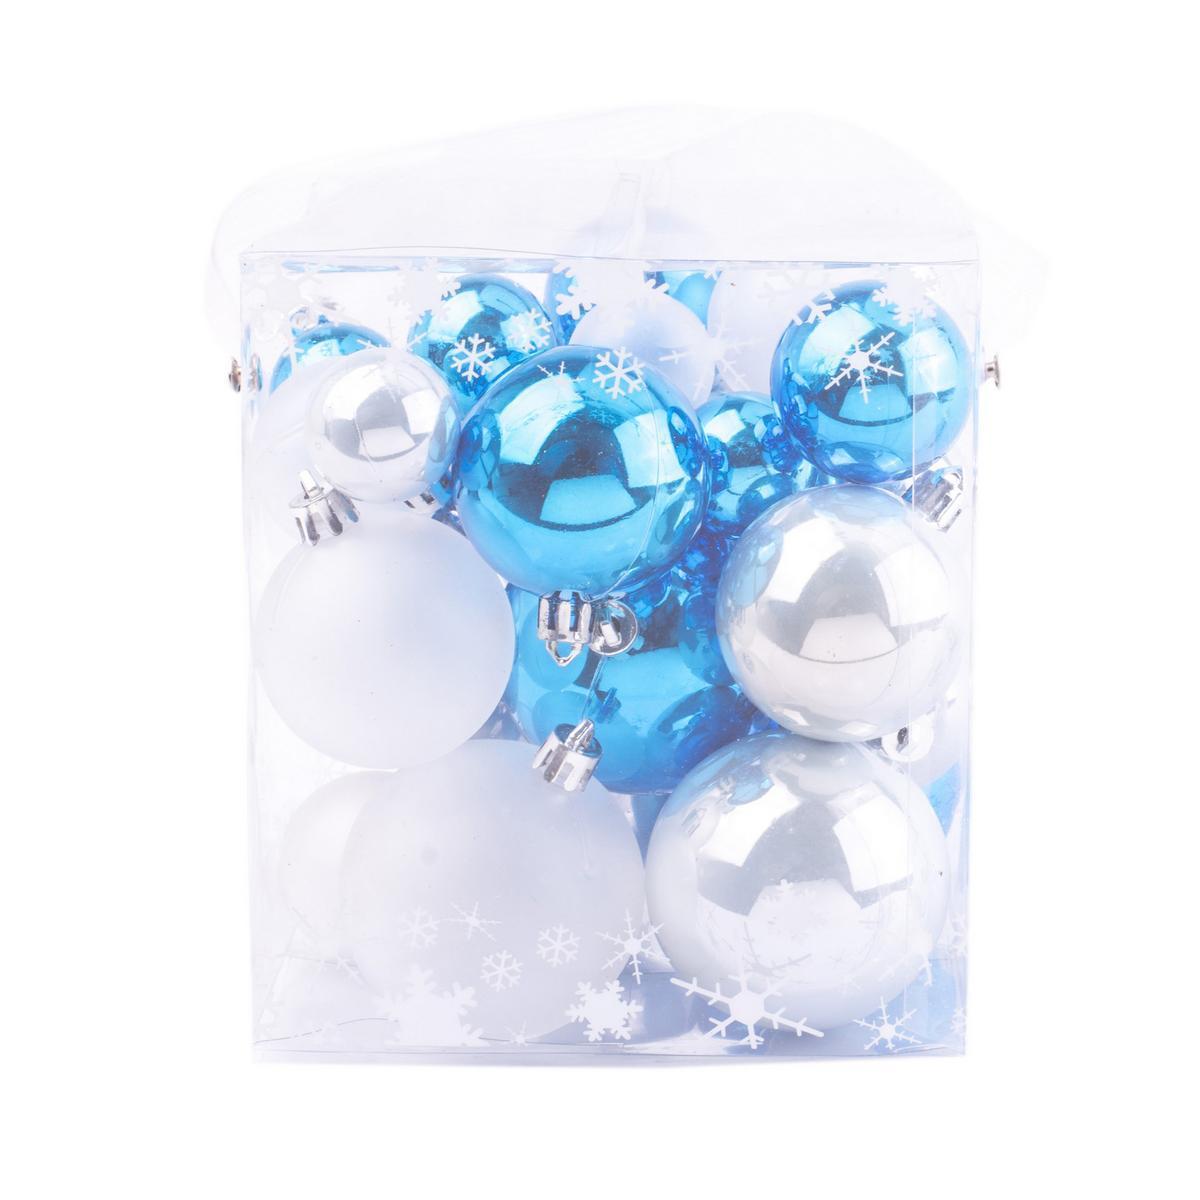 31 boules de Noël - Plastique - 13.5 x 13.5 cm - Bleu et blanc